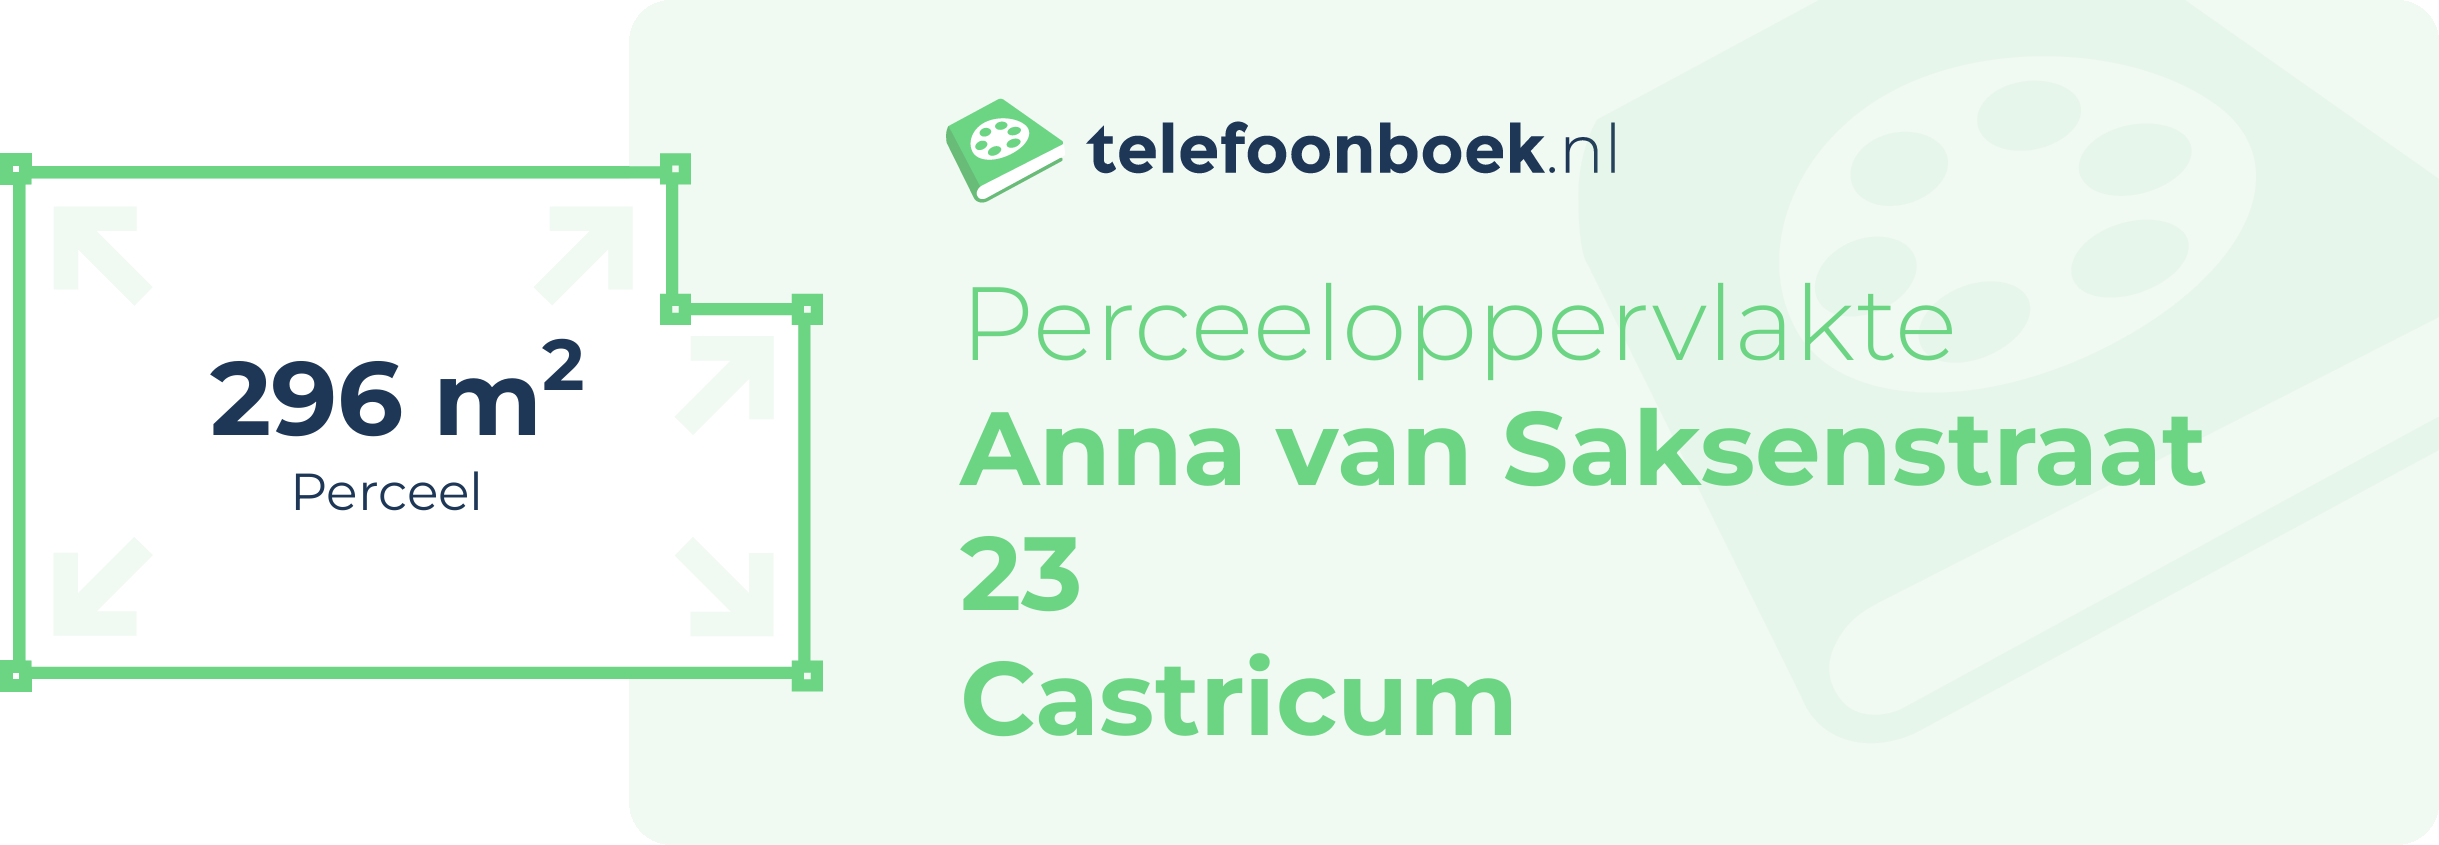 Perceeloppervlakte Anna Van Saksenstraat 23 Castricum